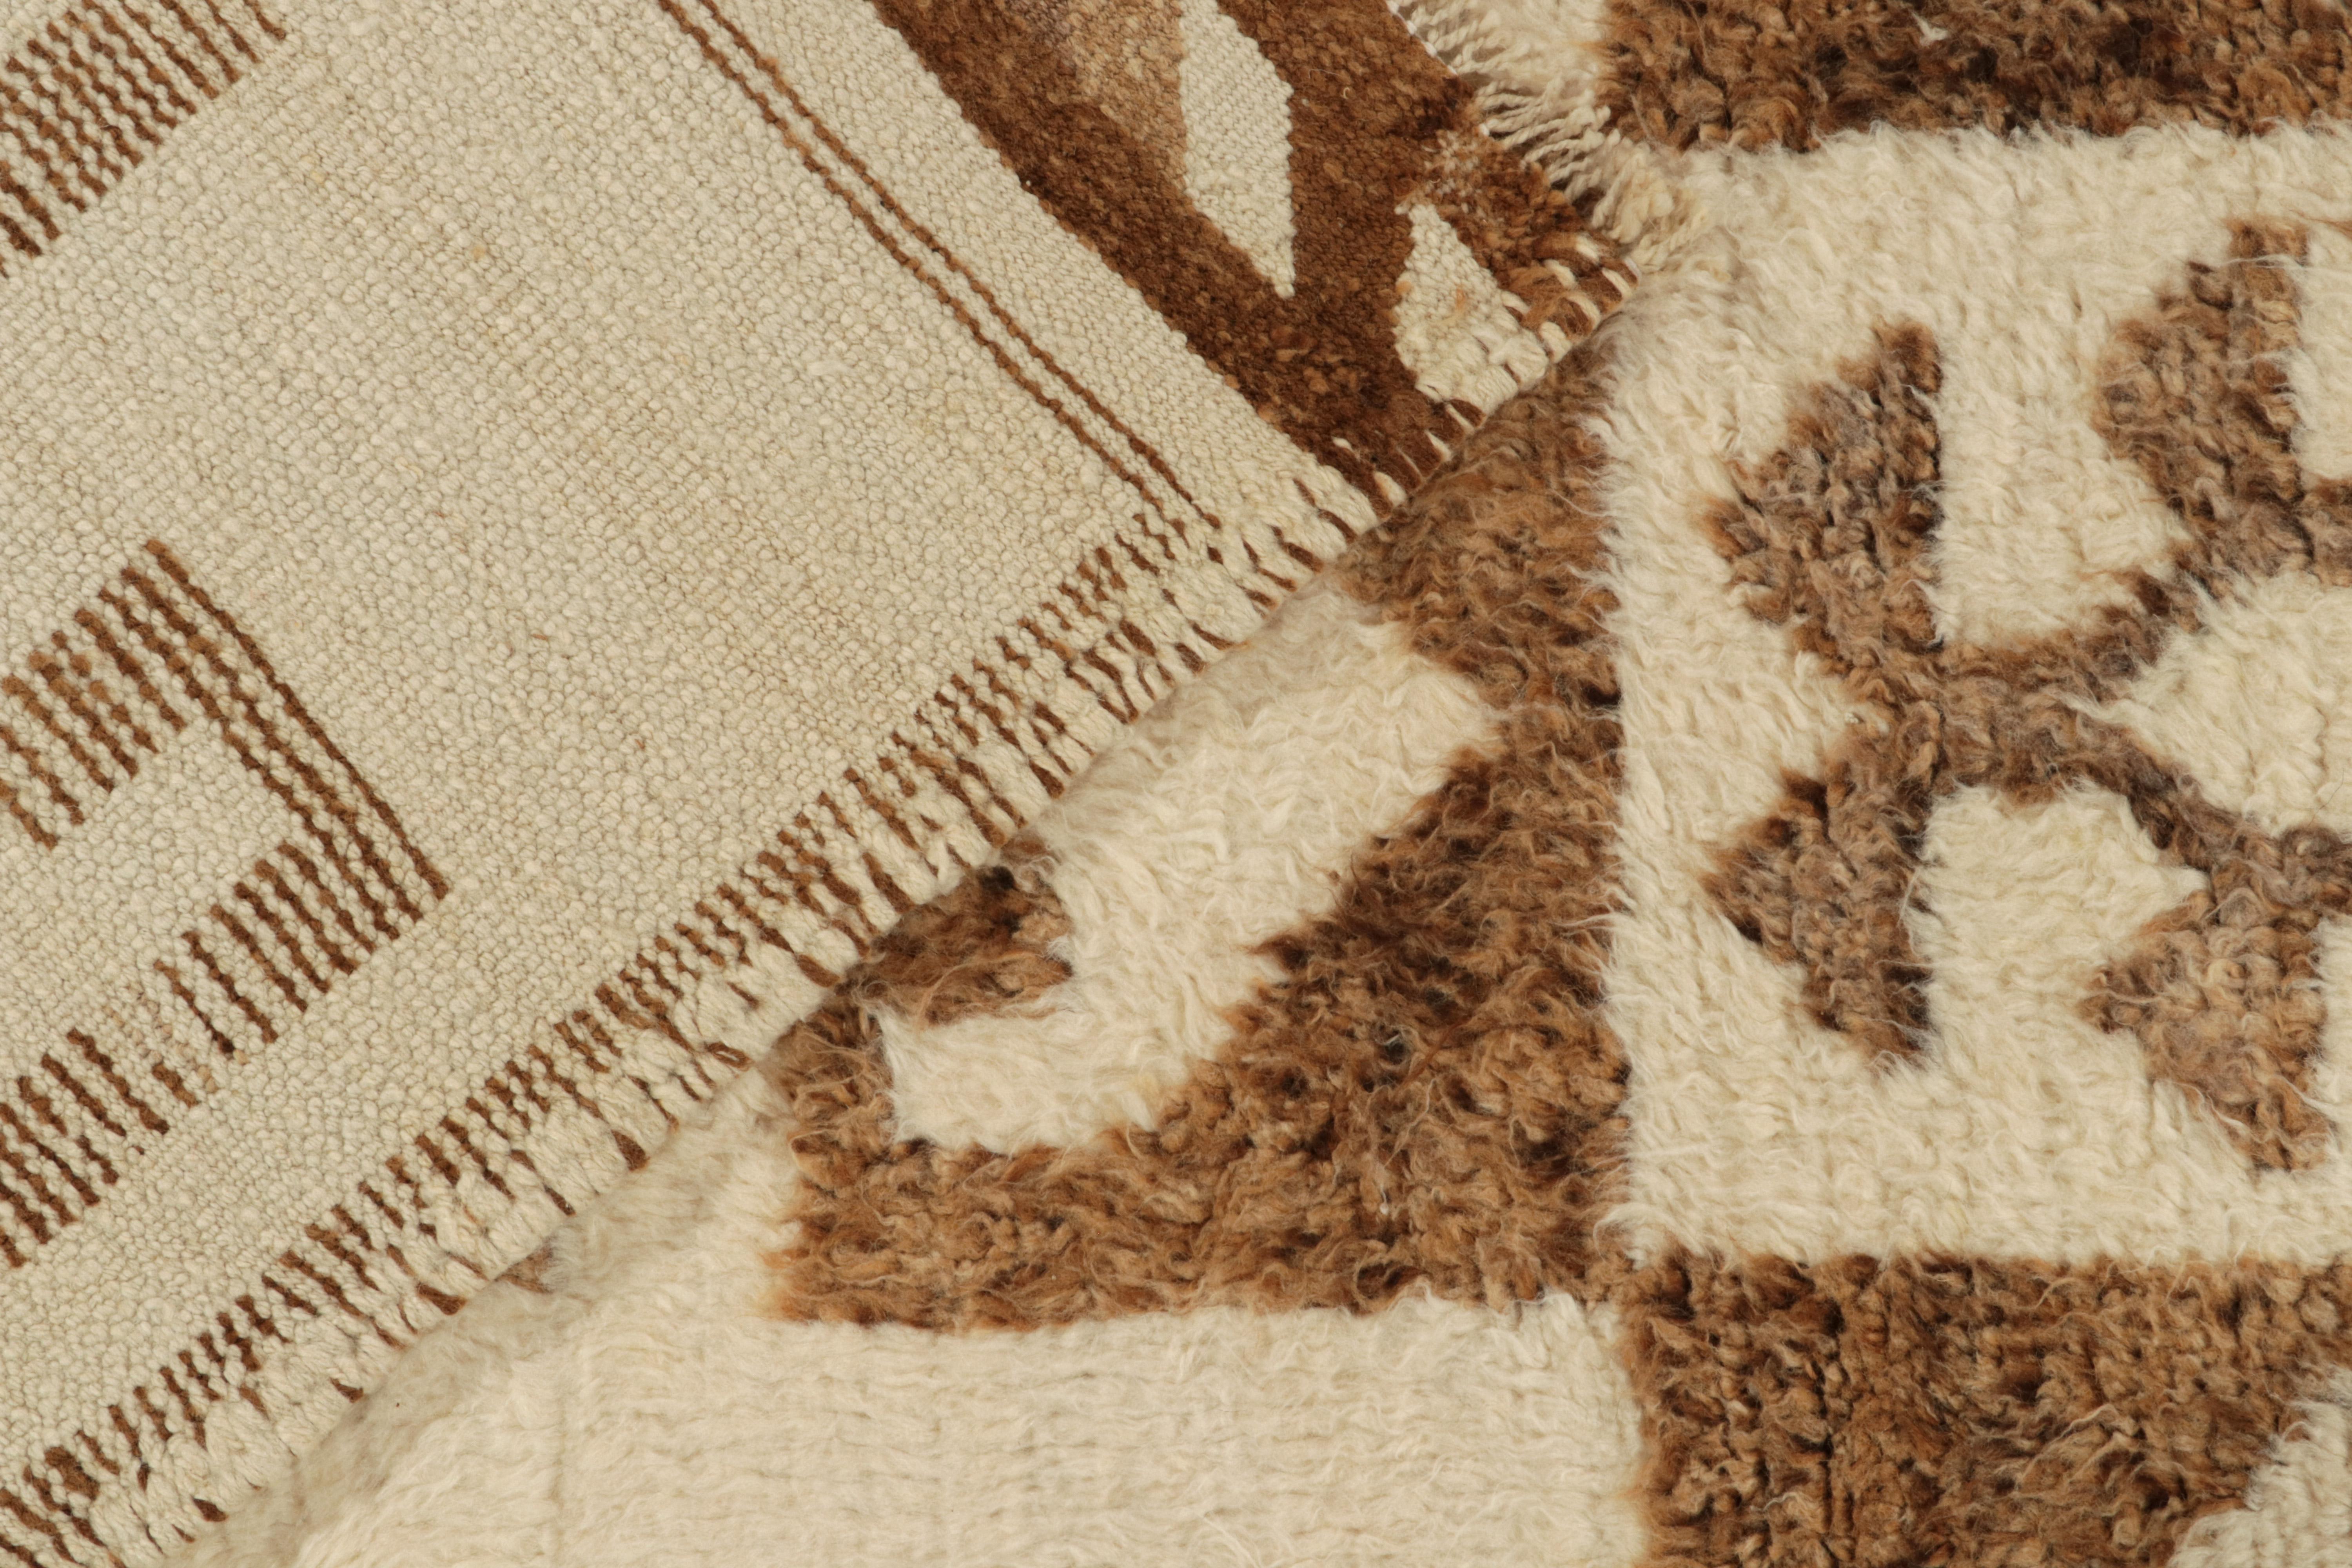 Wool Vintage Tribal Runner in Beige-Brown Geometric Patterns, Style by Rug & Kilim For Sale